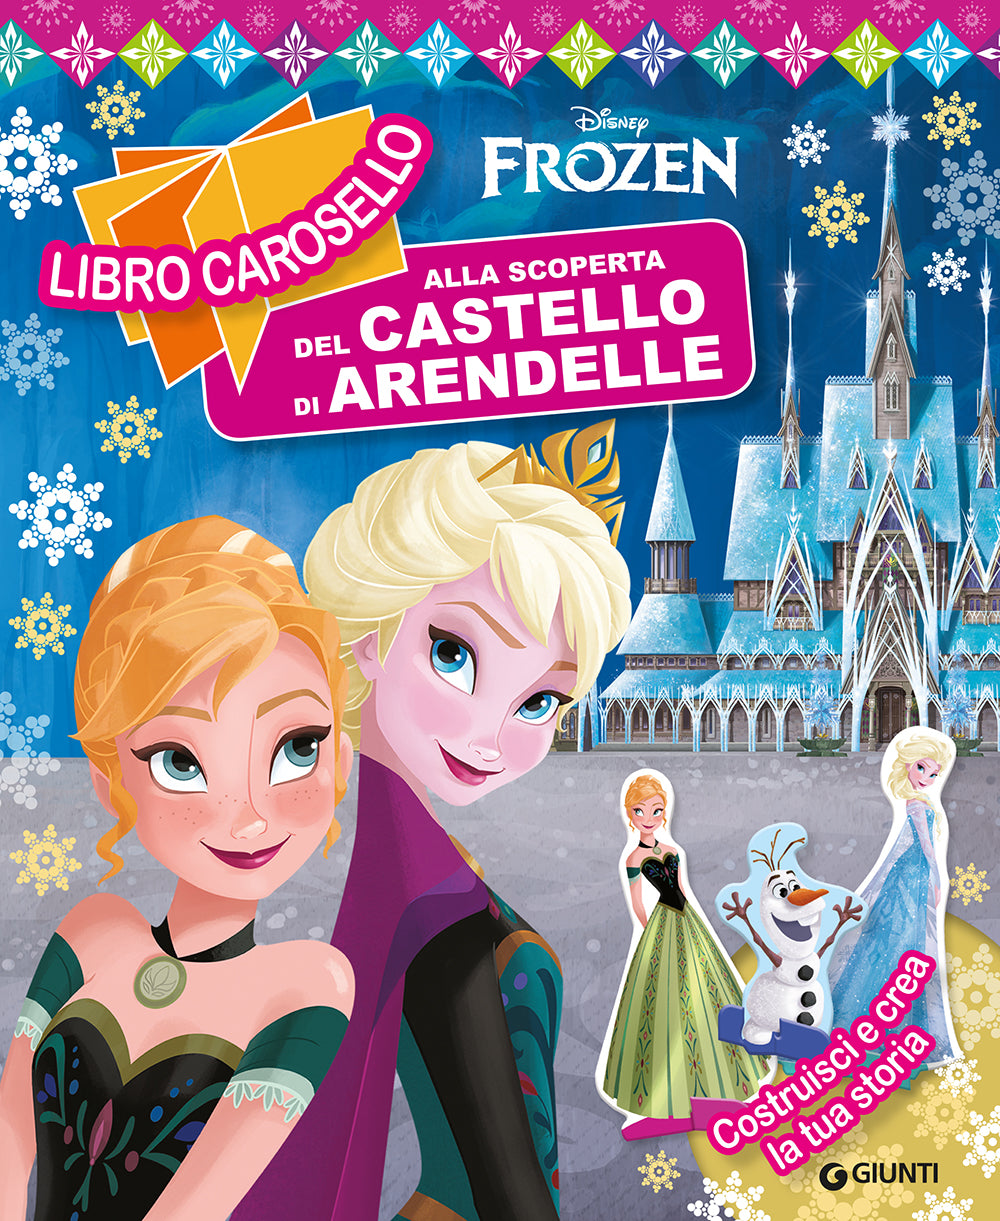 Libro carosello Disney Frozen - Alla scoperta del castello di Arendelle. Costruisci e crea la tua storia